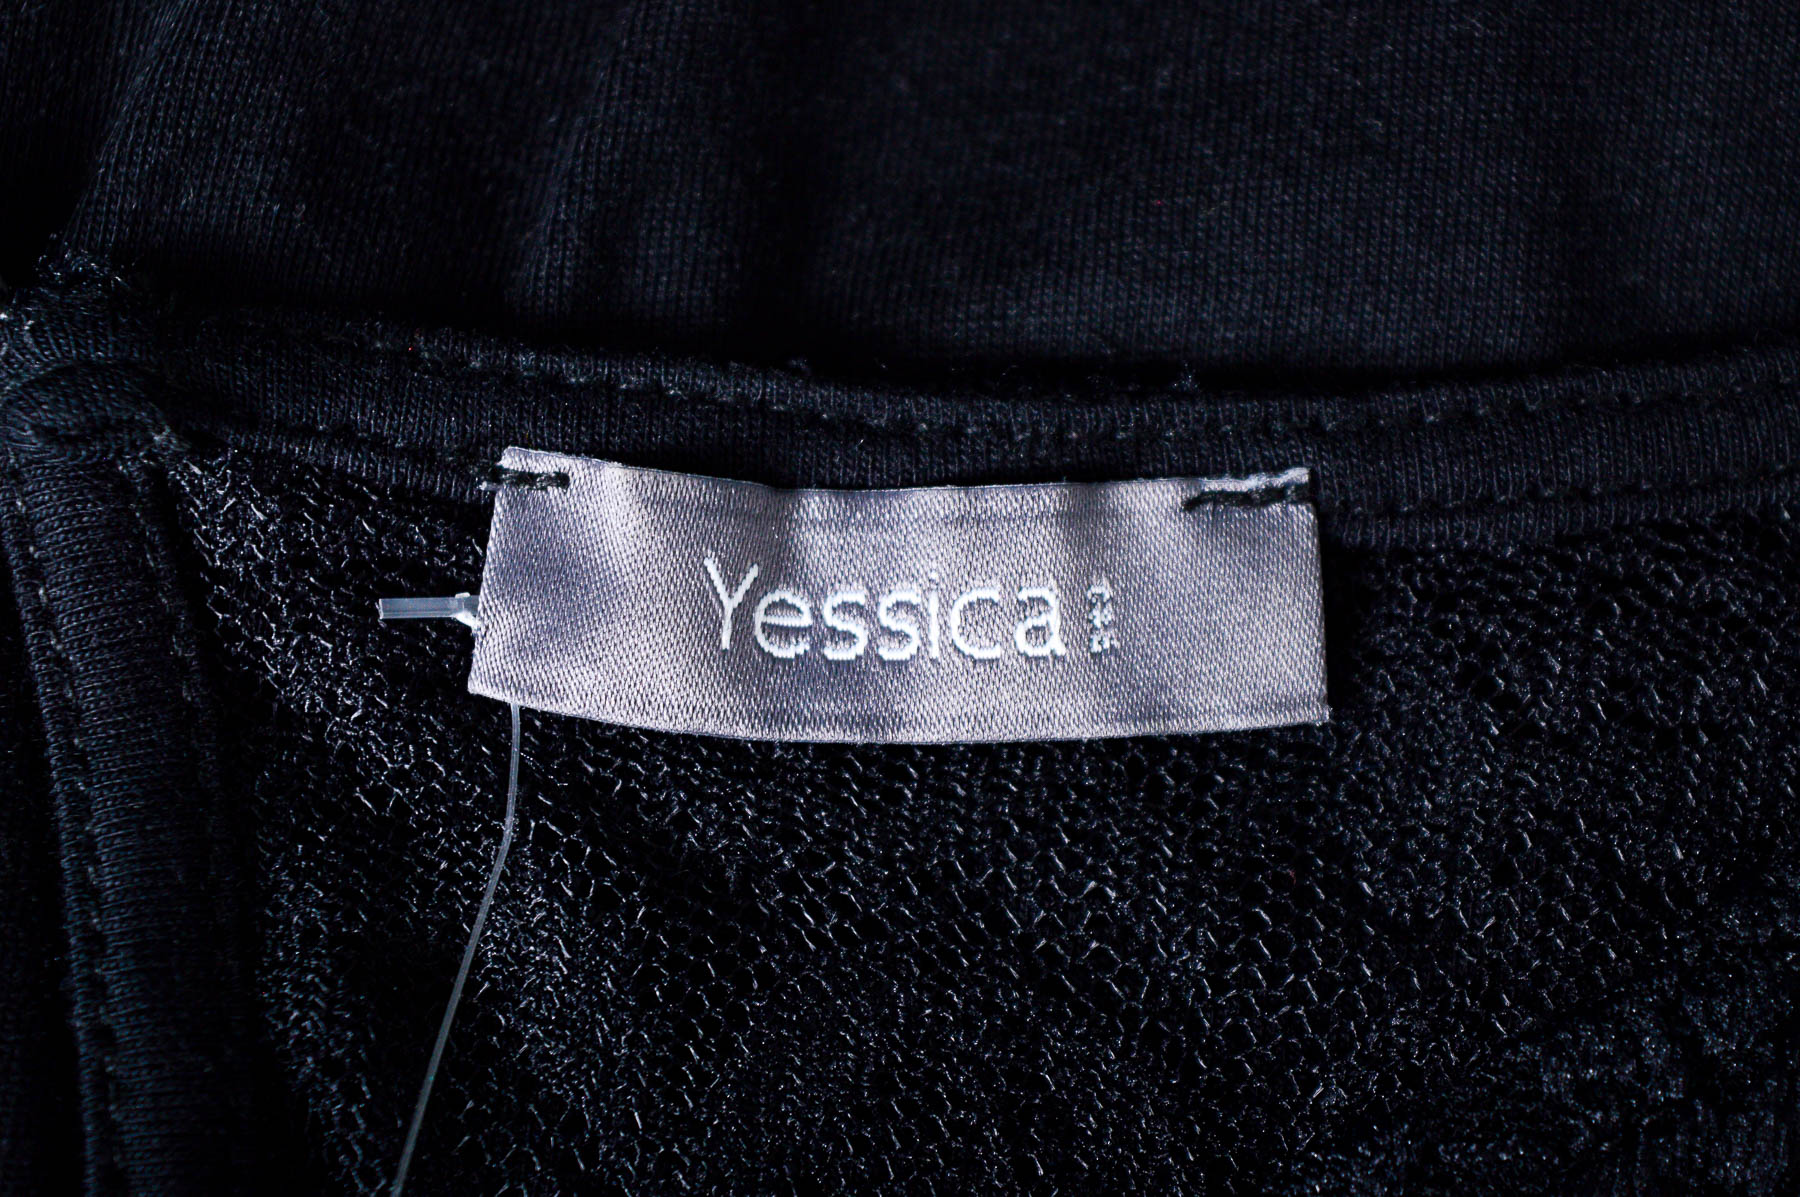 Γυναικεία μπλούζα - Yessica - 2